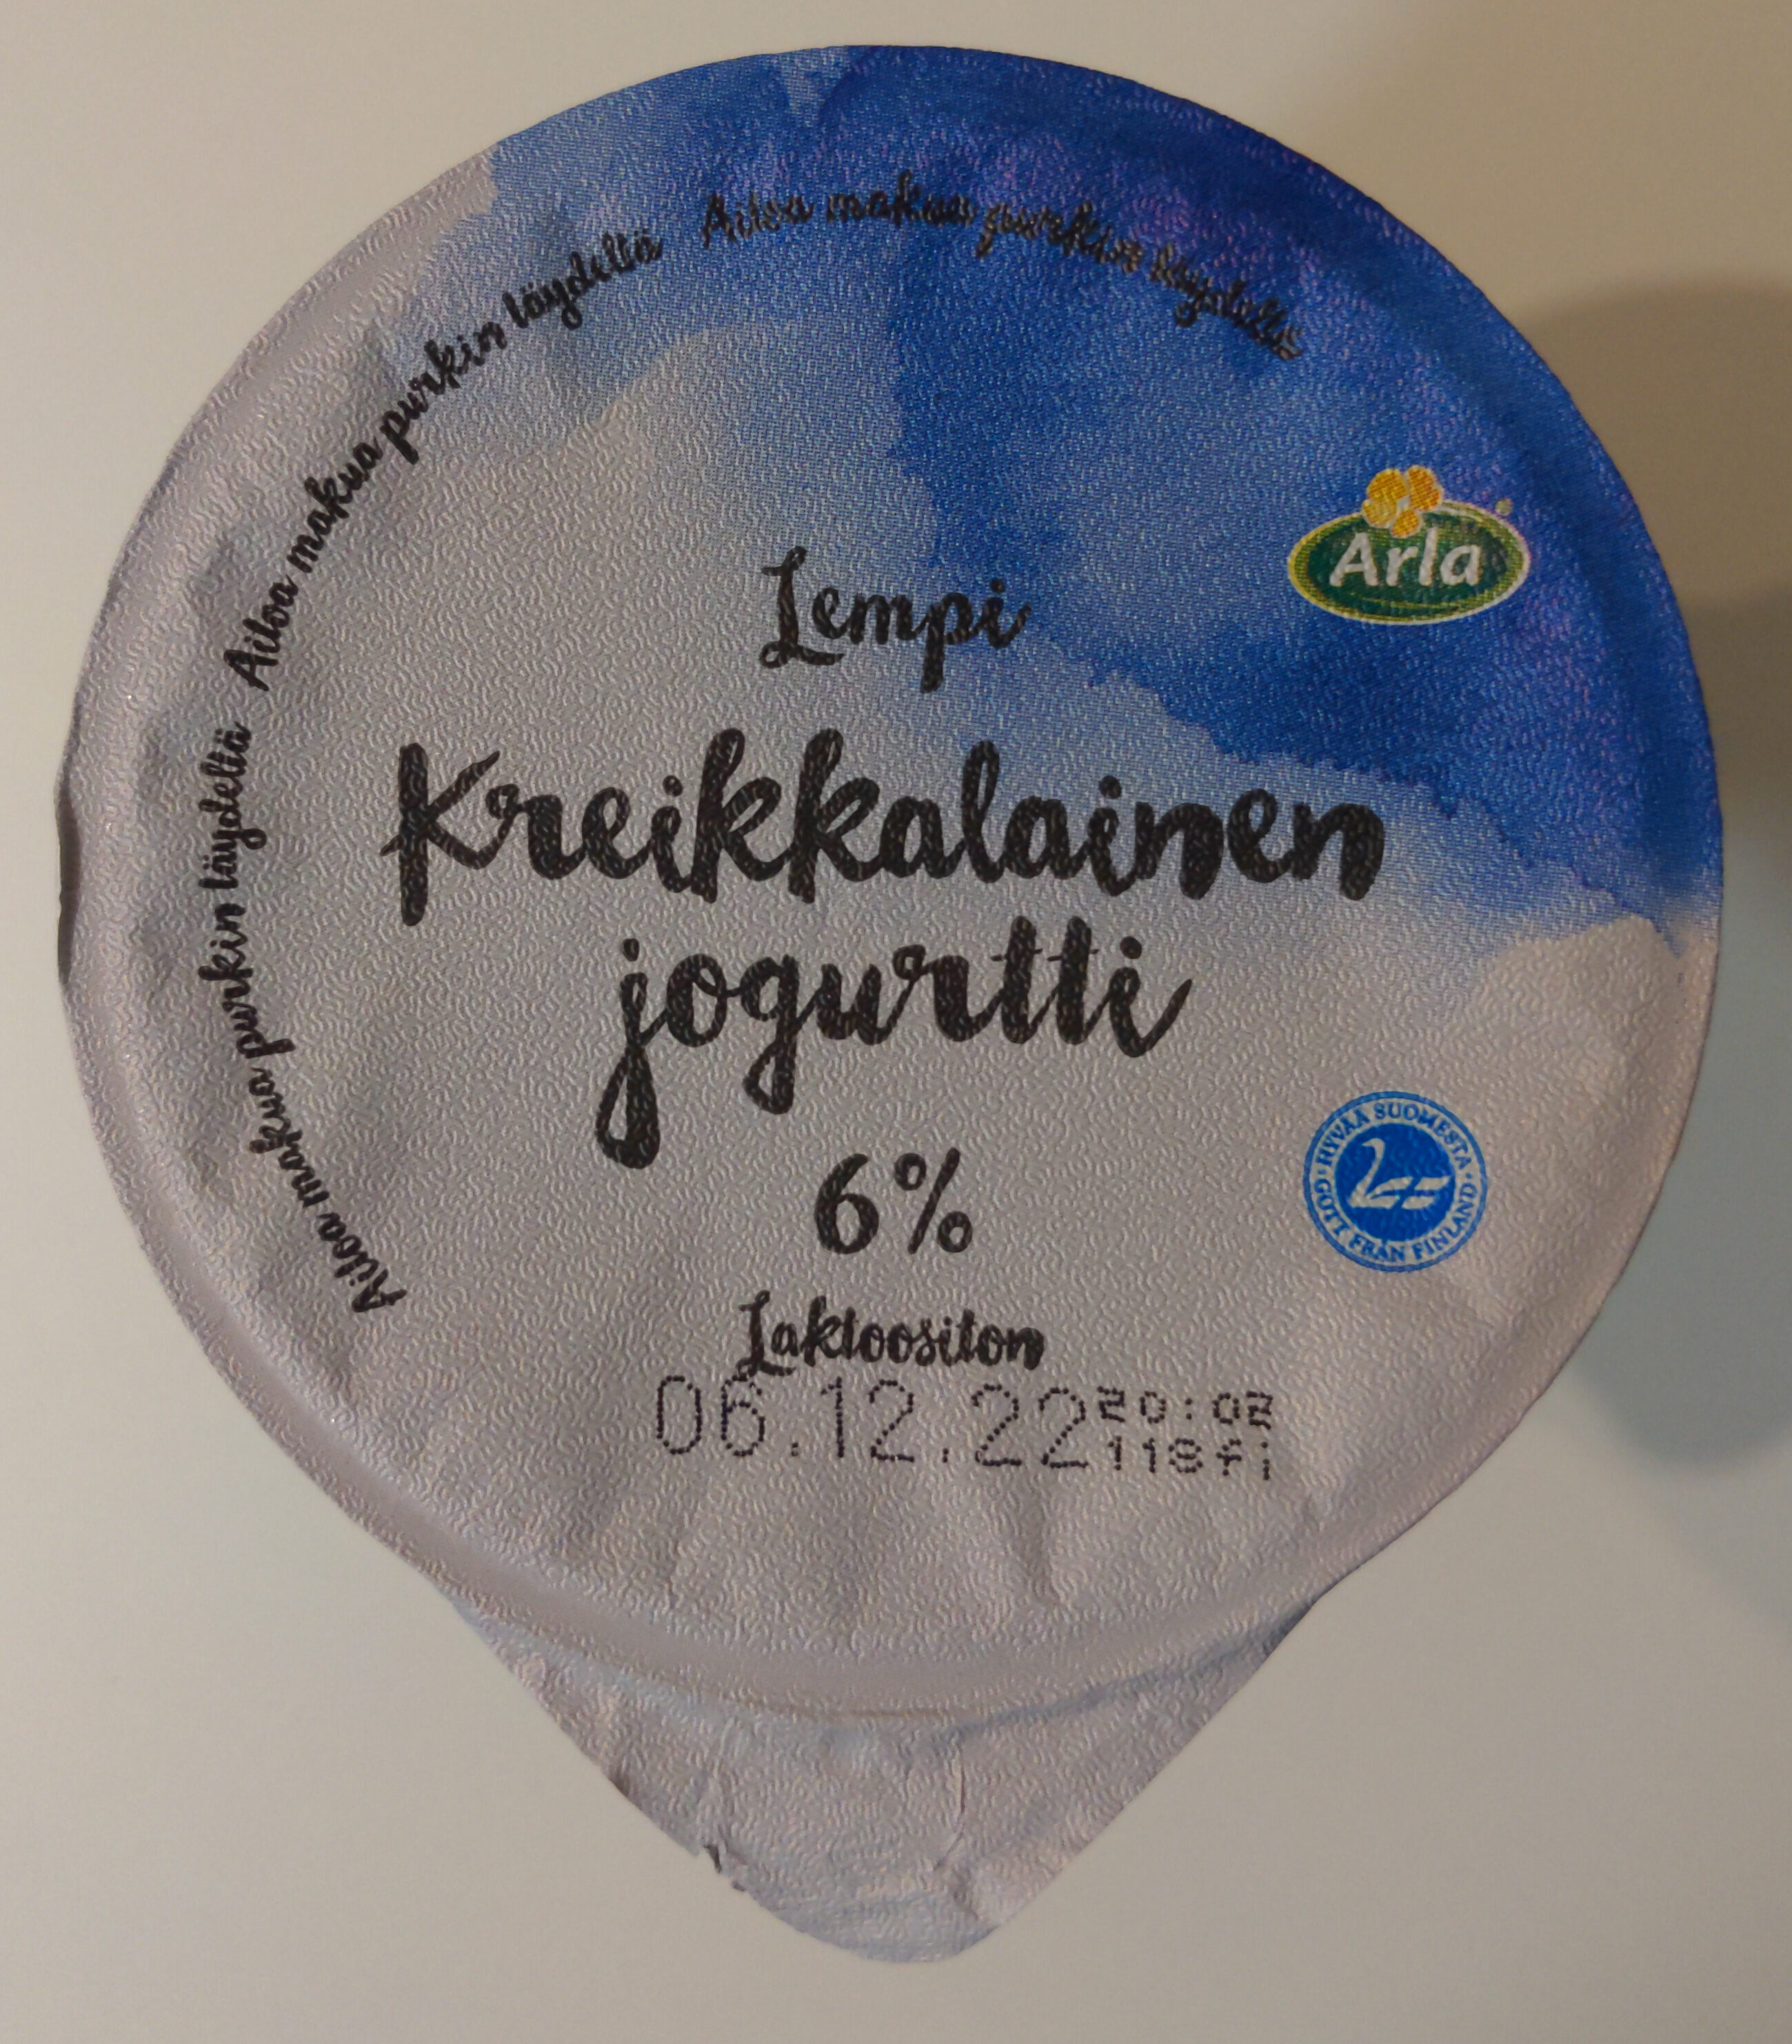 Kreikkalainen jogurtti 6% - Produit - en